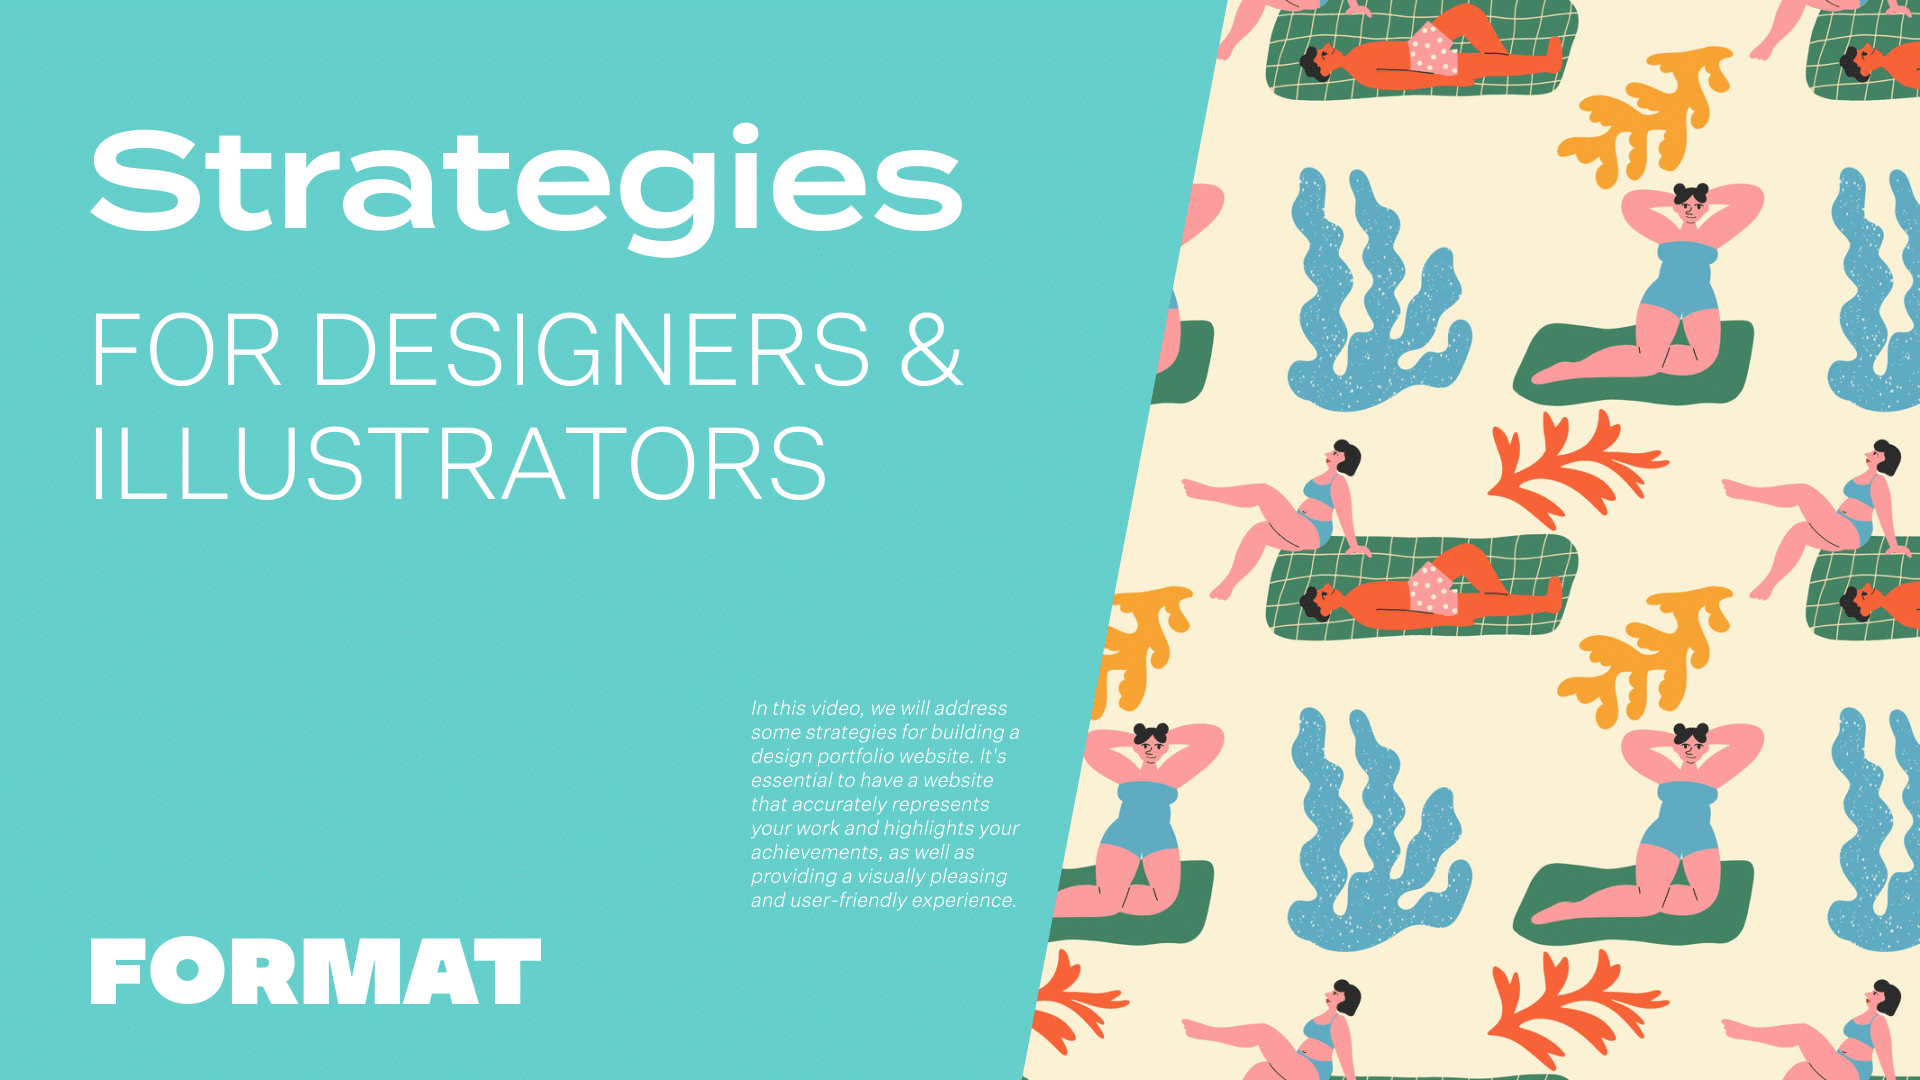 O texto da imagem diz "Strategies for Designers & Illustrators" (Estratégias para designers e ilustradores) e mostra uma ilustração de pessoas na praia